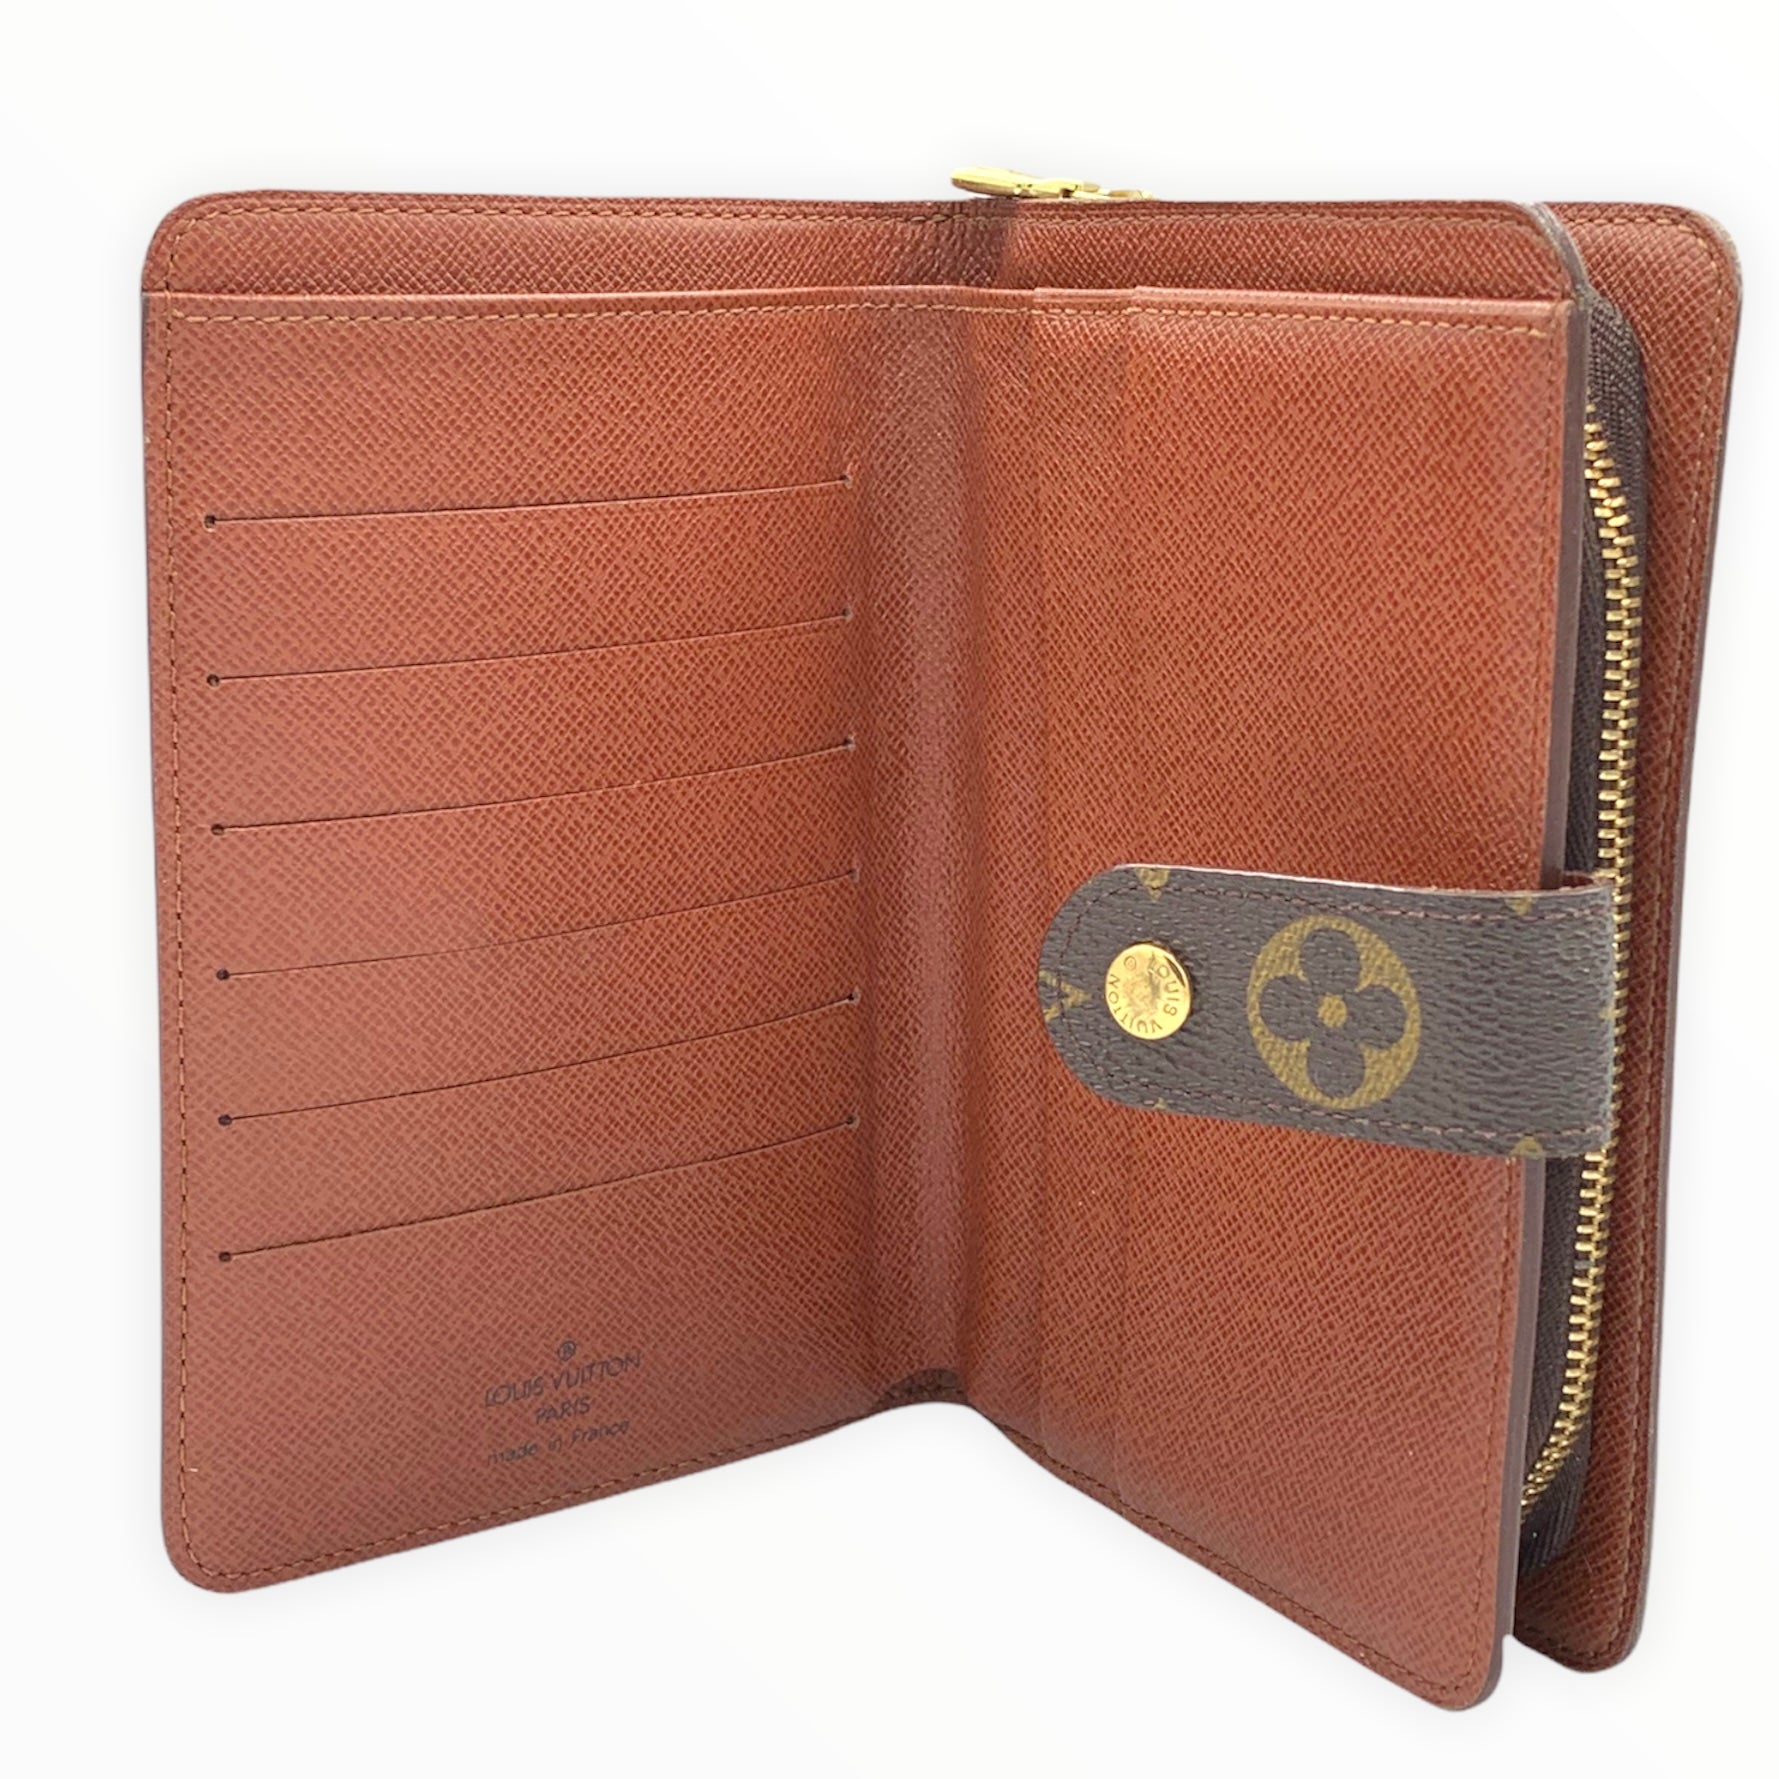 Authenticated Used LOUIS VUITTON Porto Papier Zip Bi-Fold Wallet with Pass Case  Monogram M61207 SP0025 